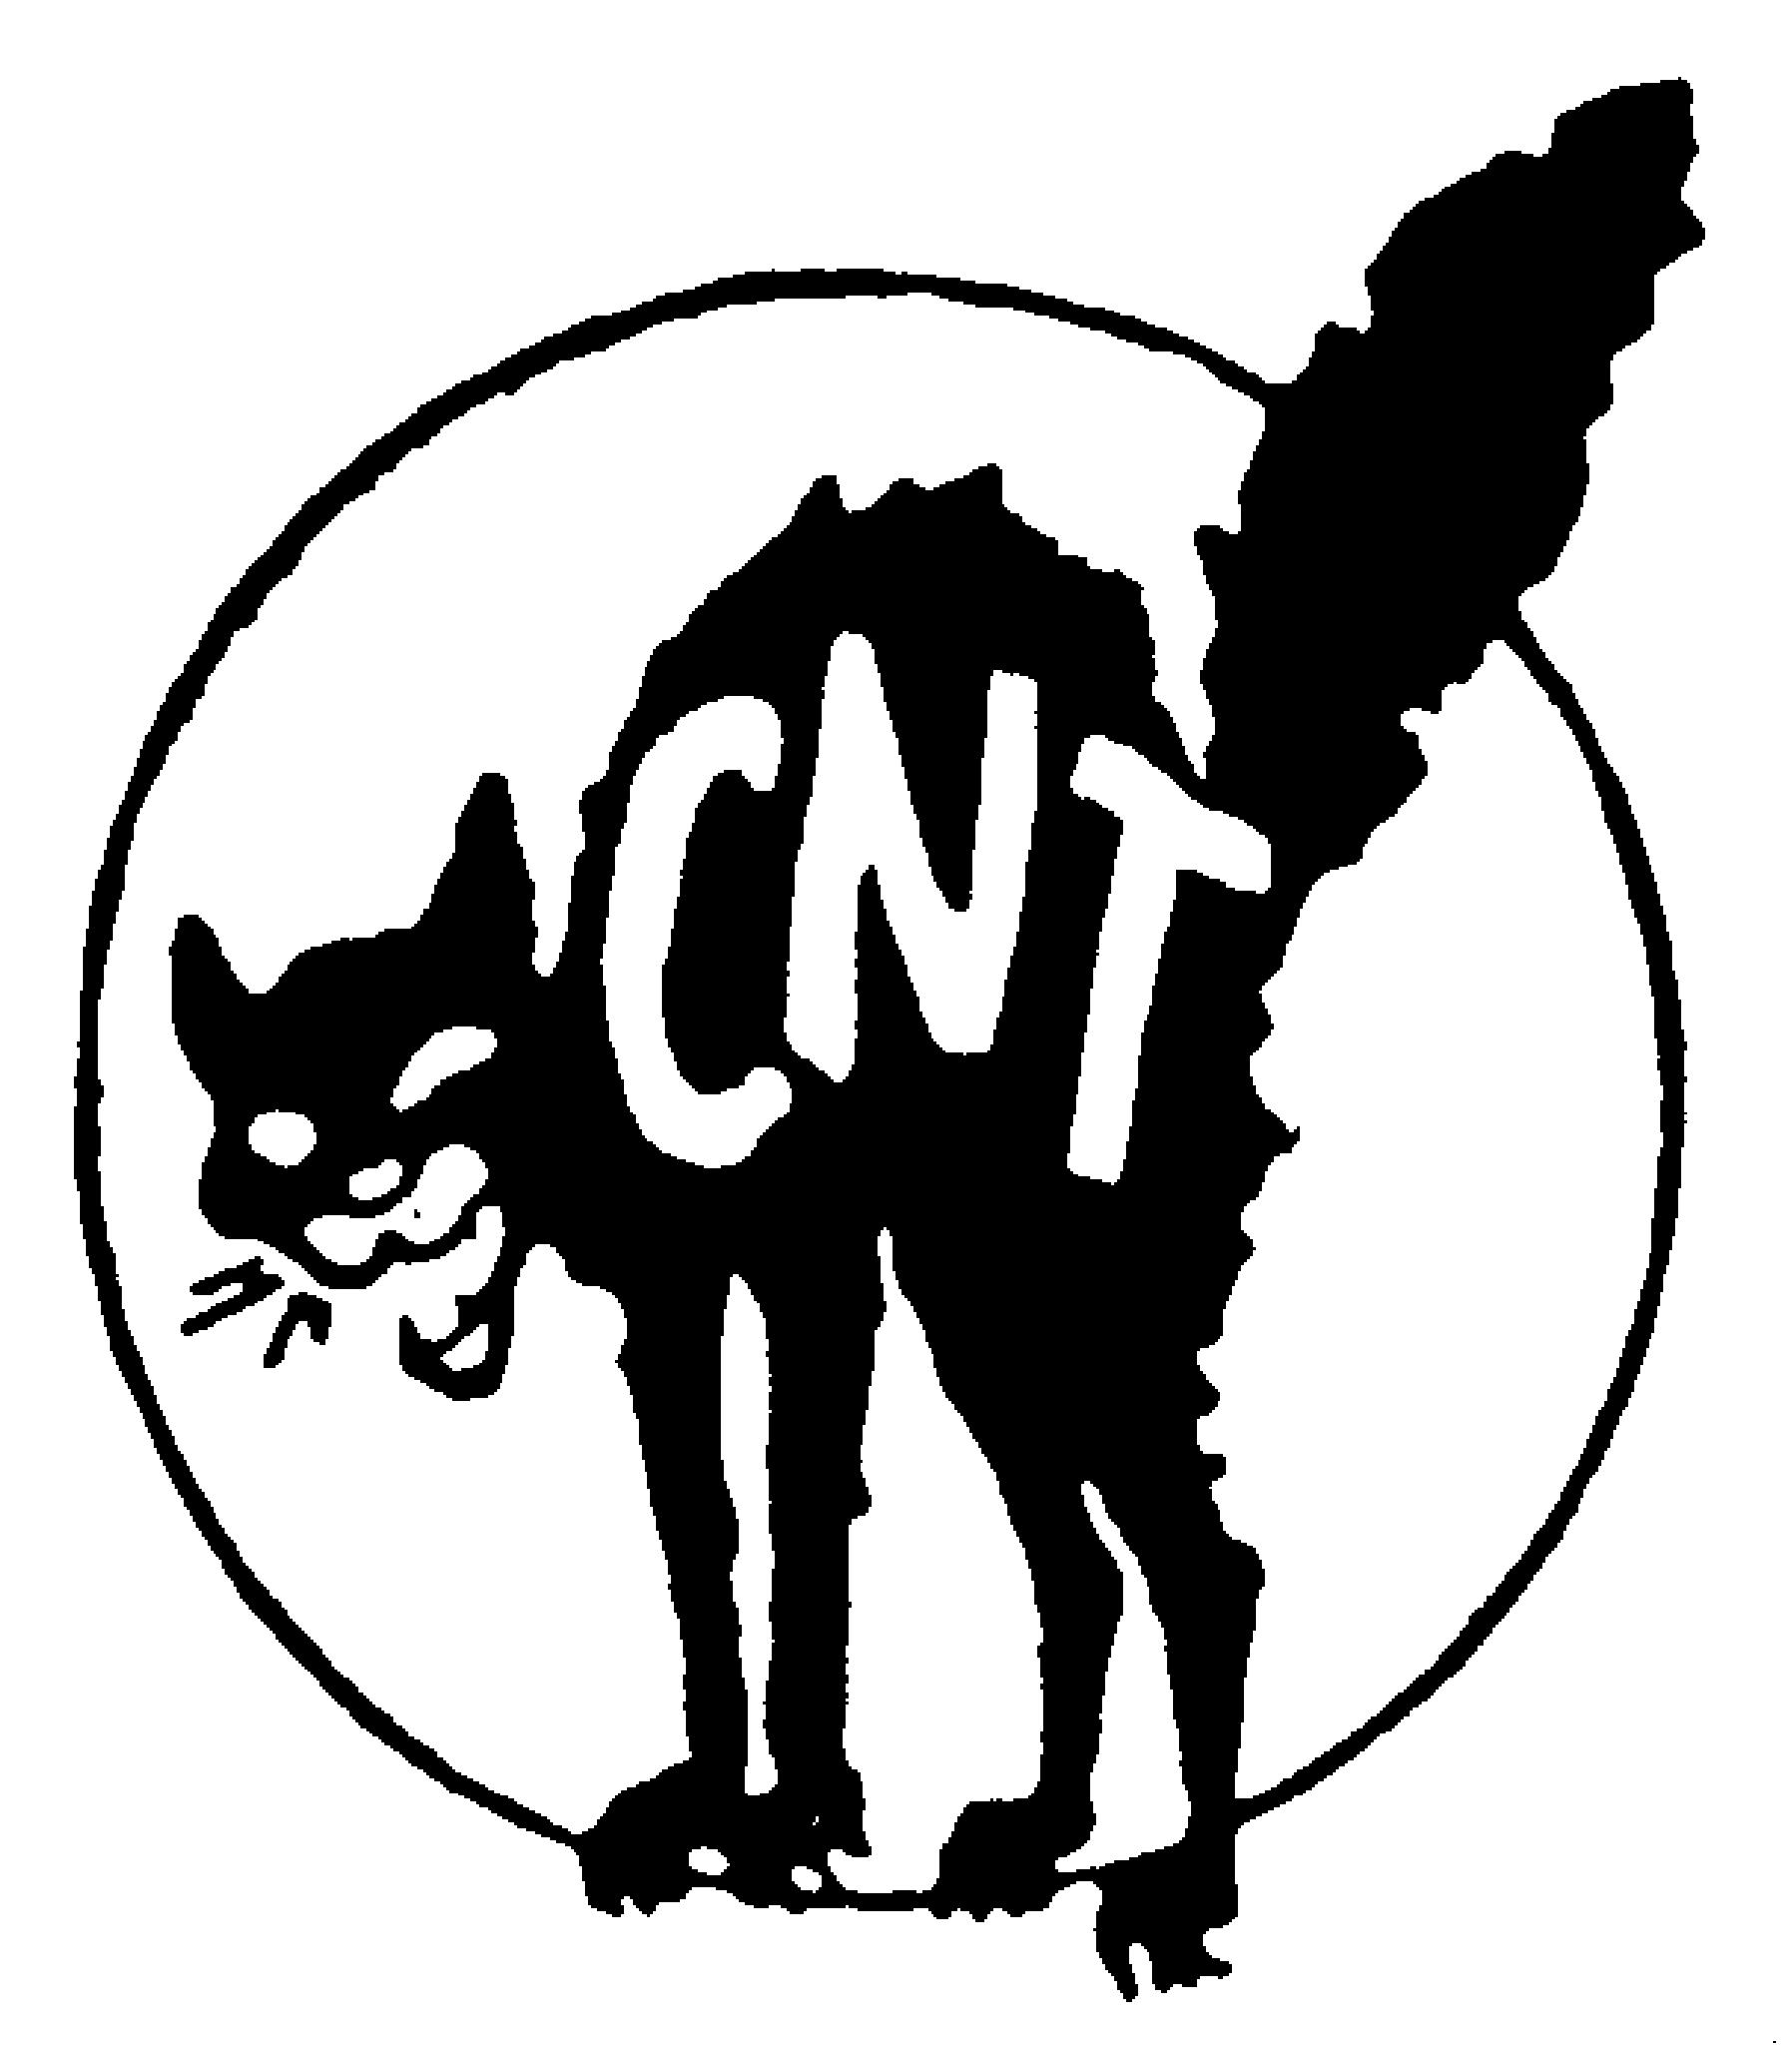 logo cnt - Confédération nationale du travail - UD 69